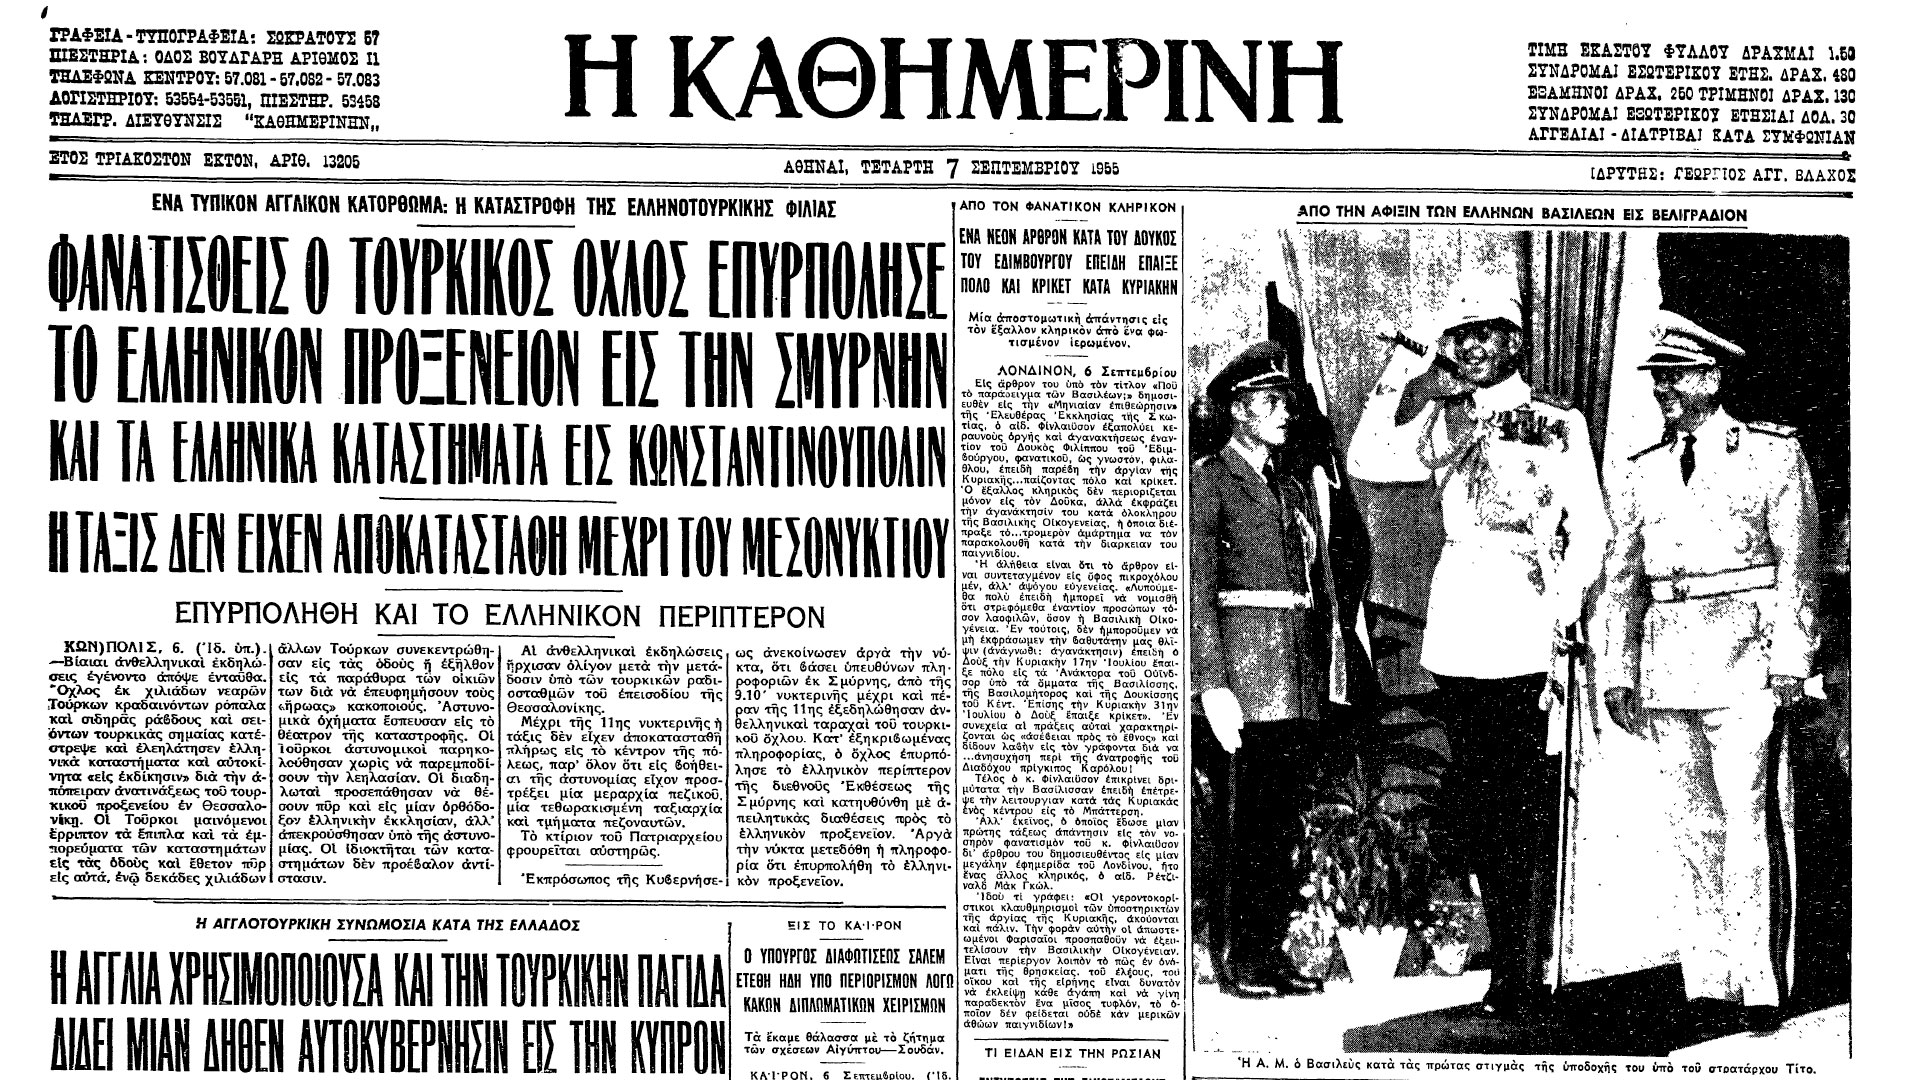 6 Σεπτεμβρίου 1955: Η Τουρκία, με την υποστήριξη Βρετανίας και ΗΠΑ, κατέστρεψε τον Ελληνισμό της Κωνσταντινούπολης